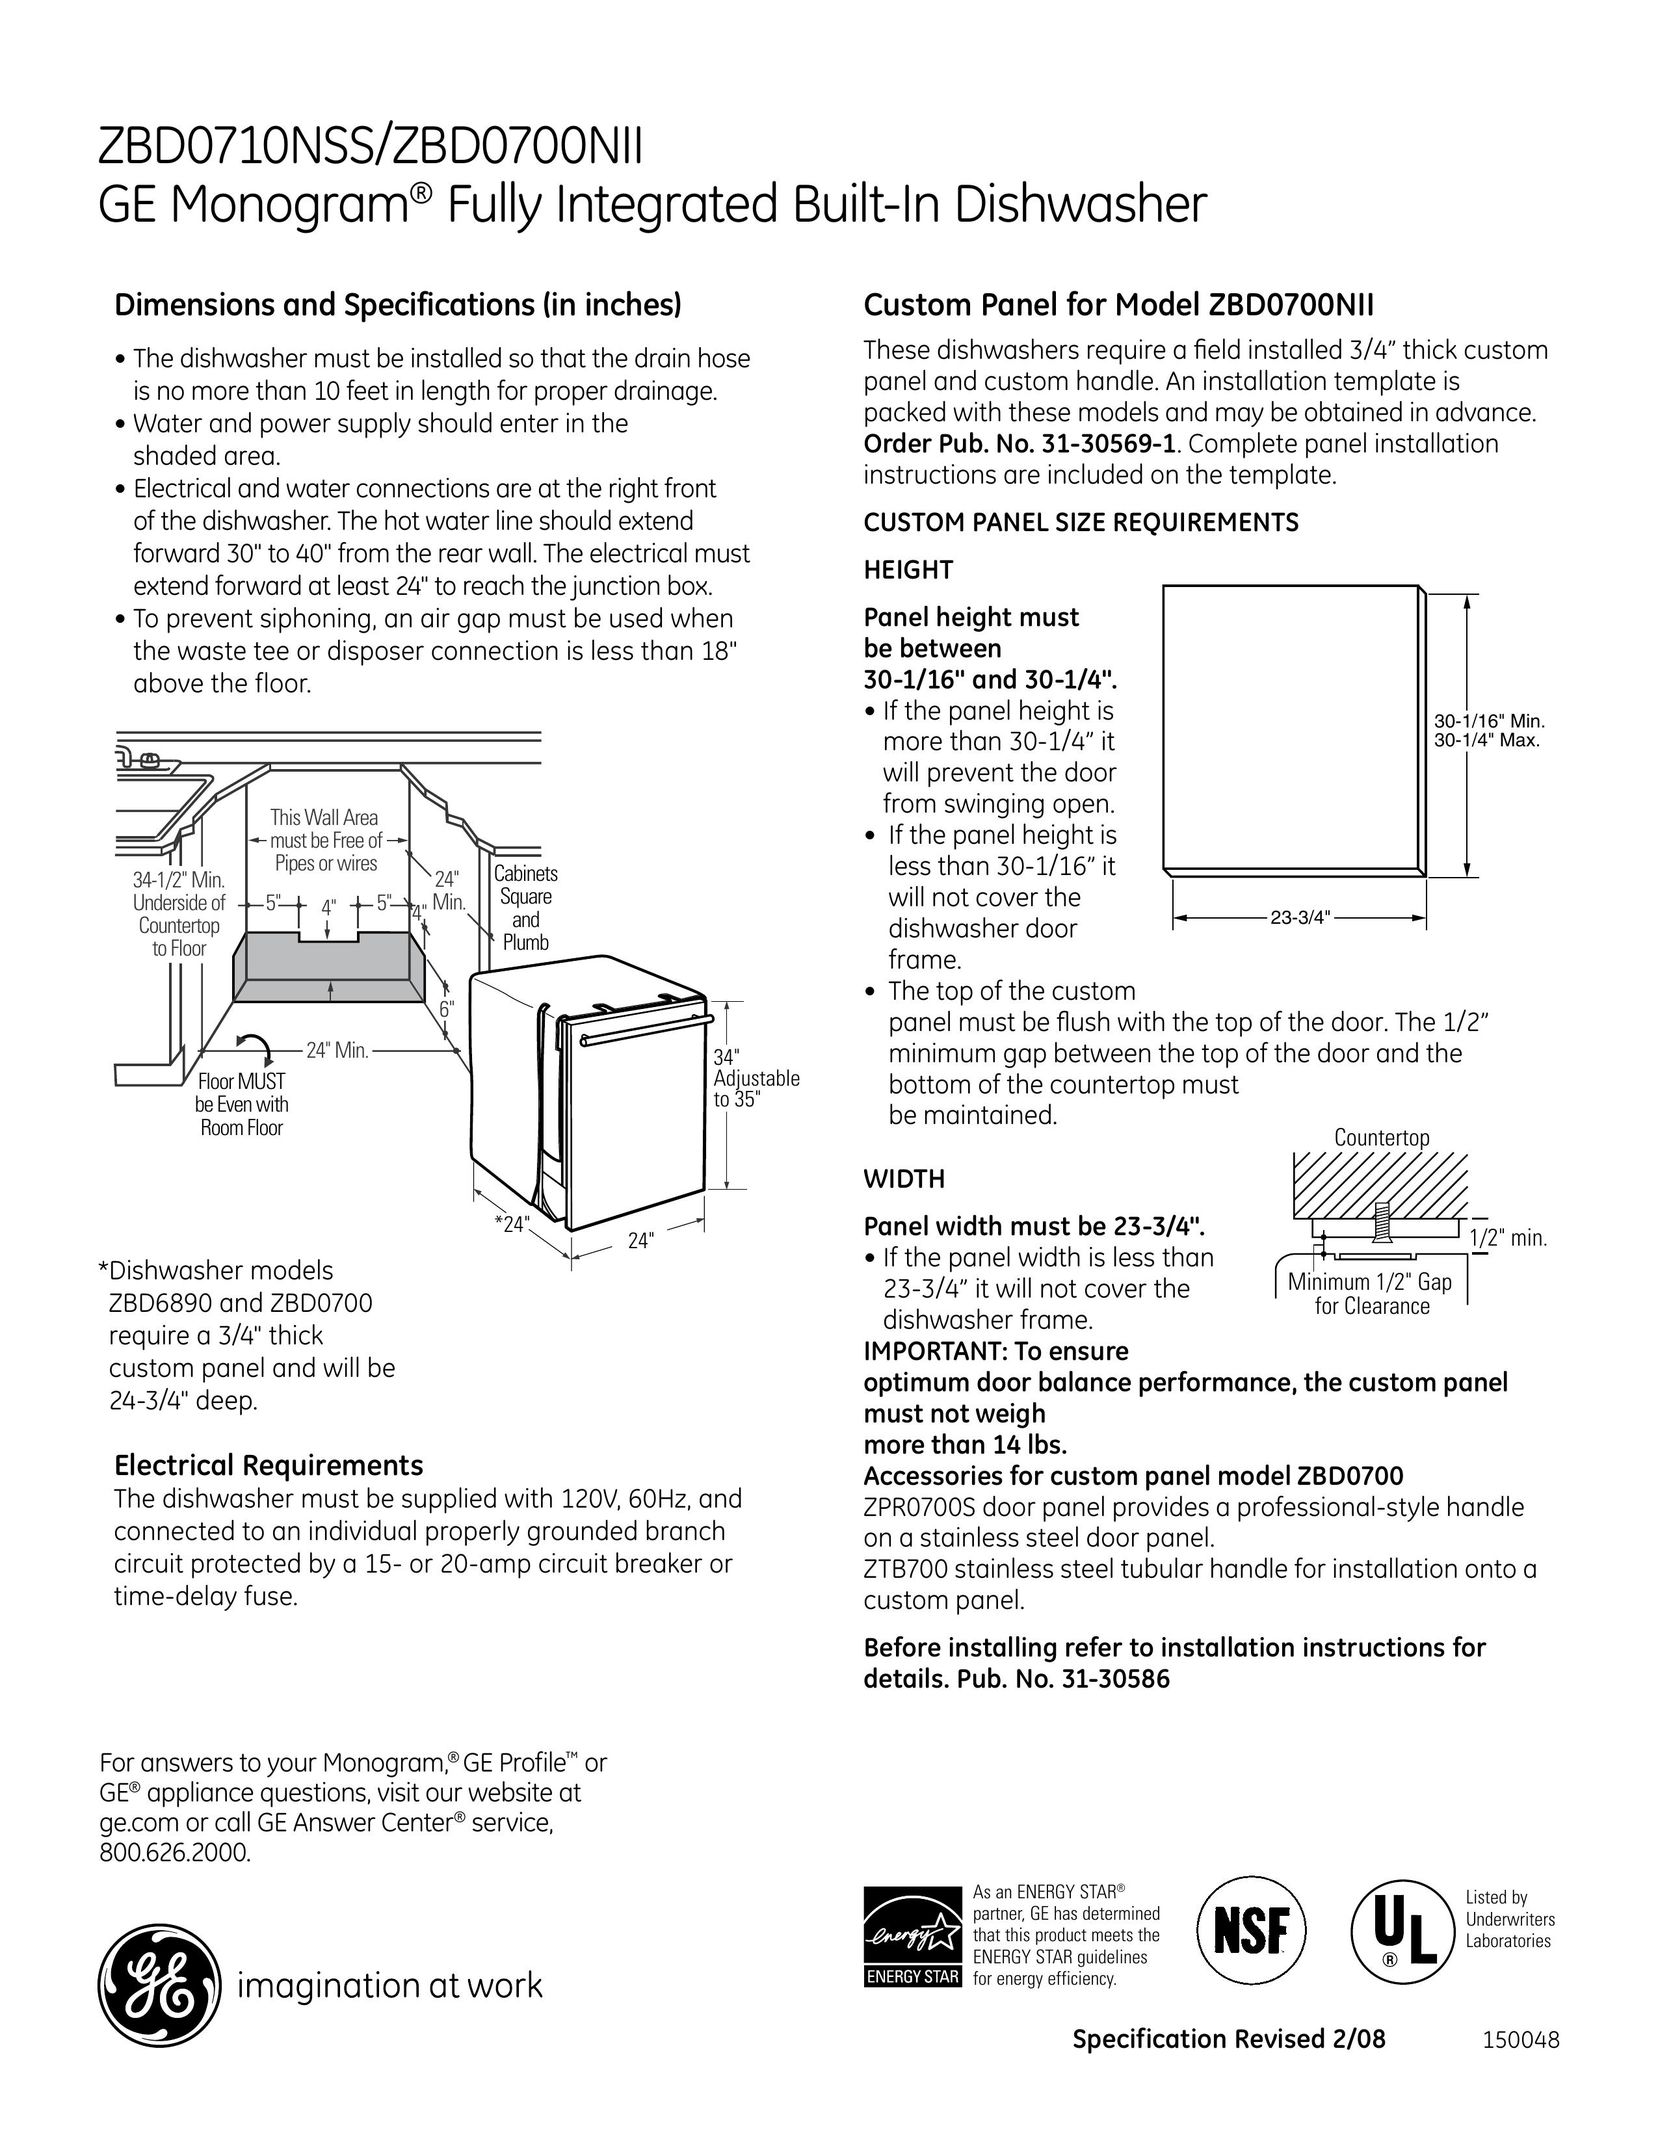 GE Monogram ZBd0700NII Dishwasher User Manual